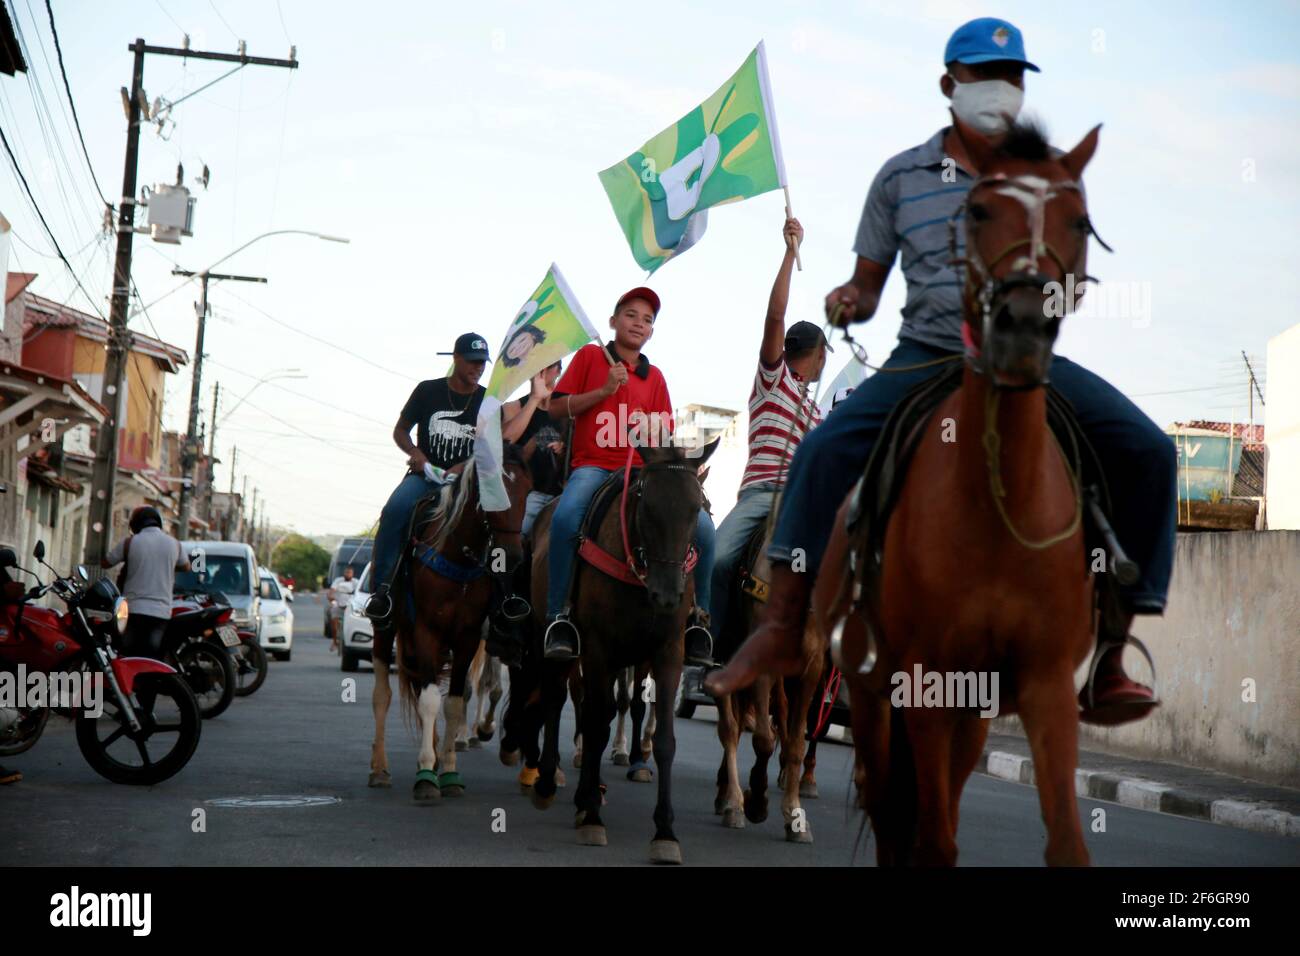 mata de sao joao, bahia, brasile - 10 novembre 2020: Si vedono le persone a cavallo durante una passeggiata nella città di Mata de Saoa Joao. Foto Stock